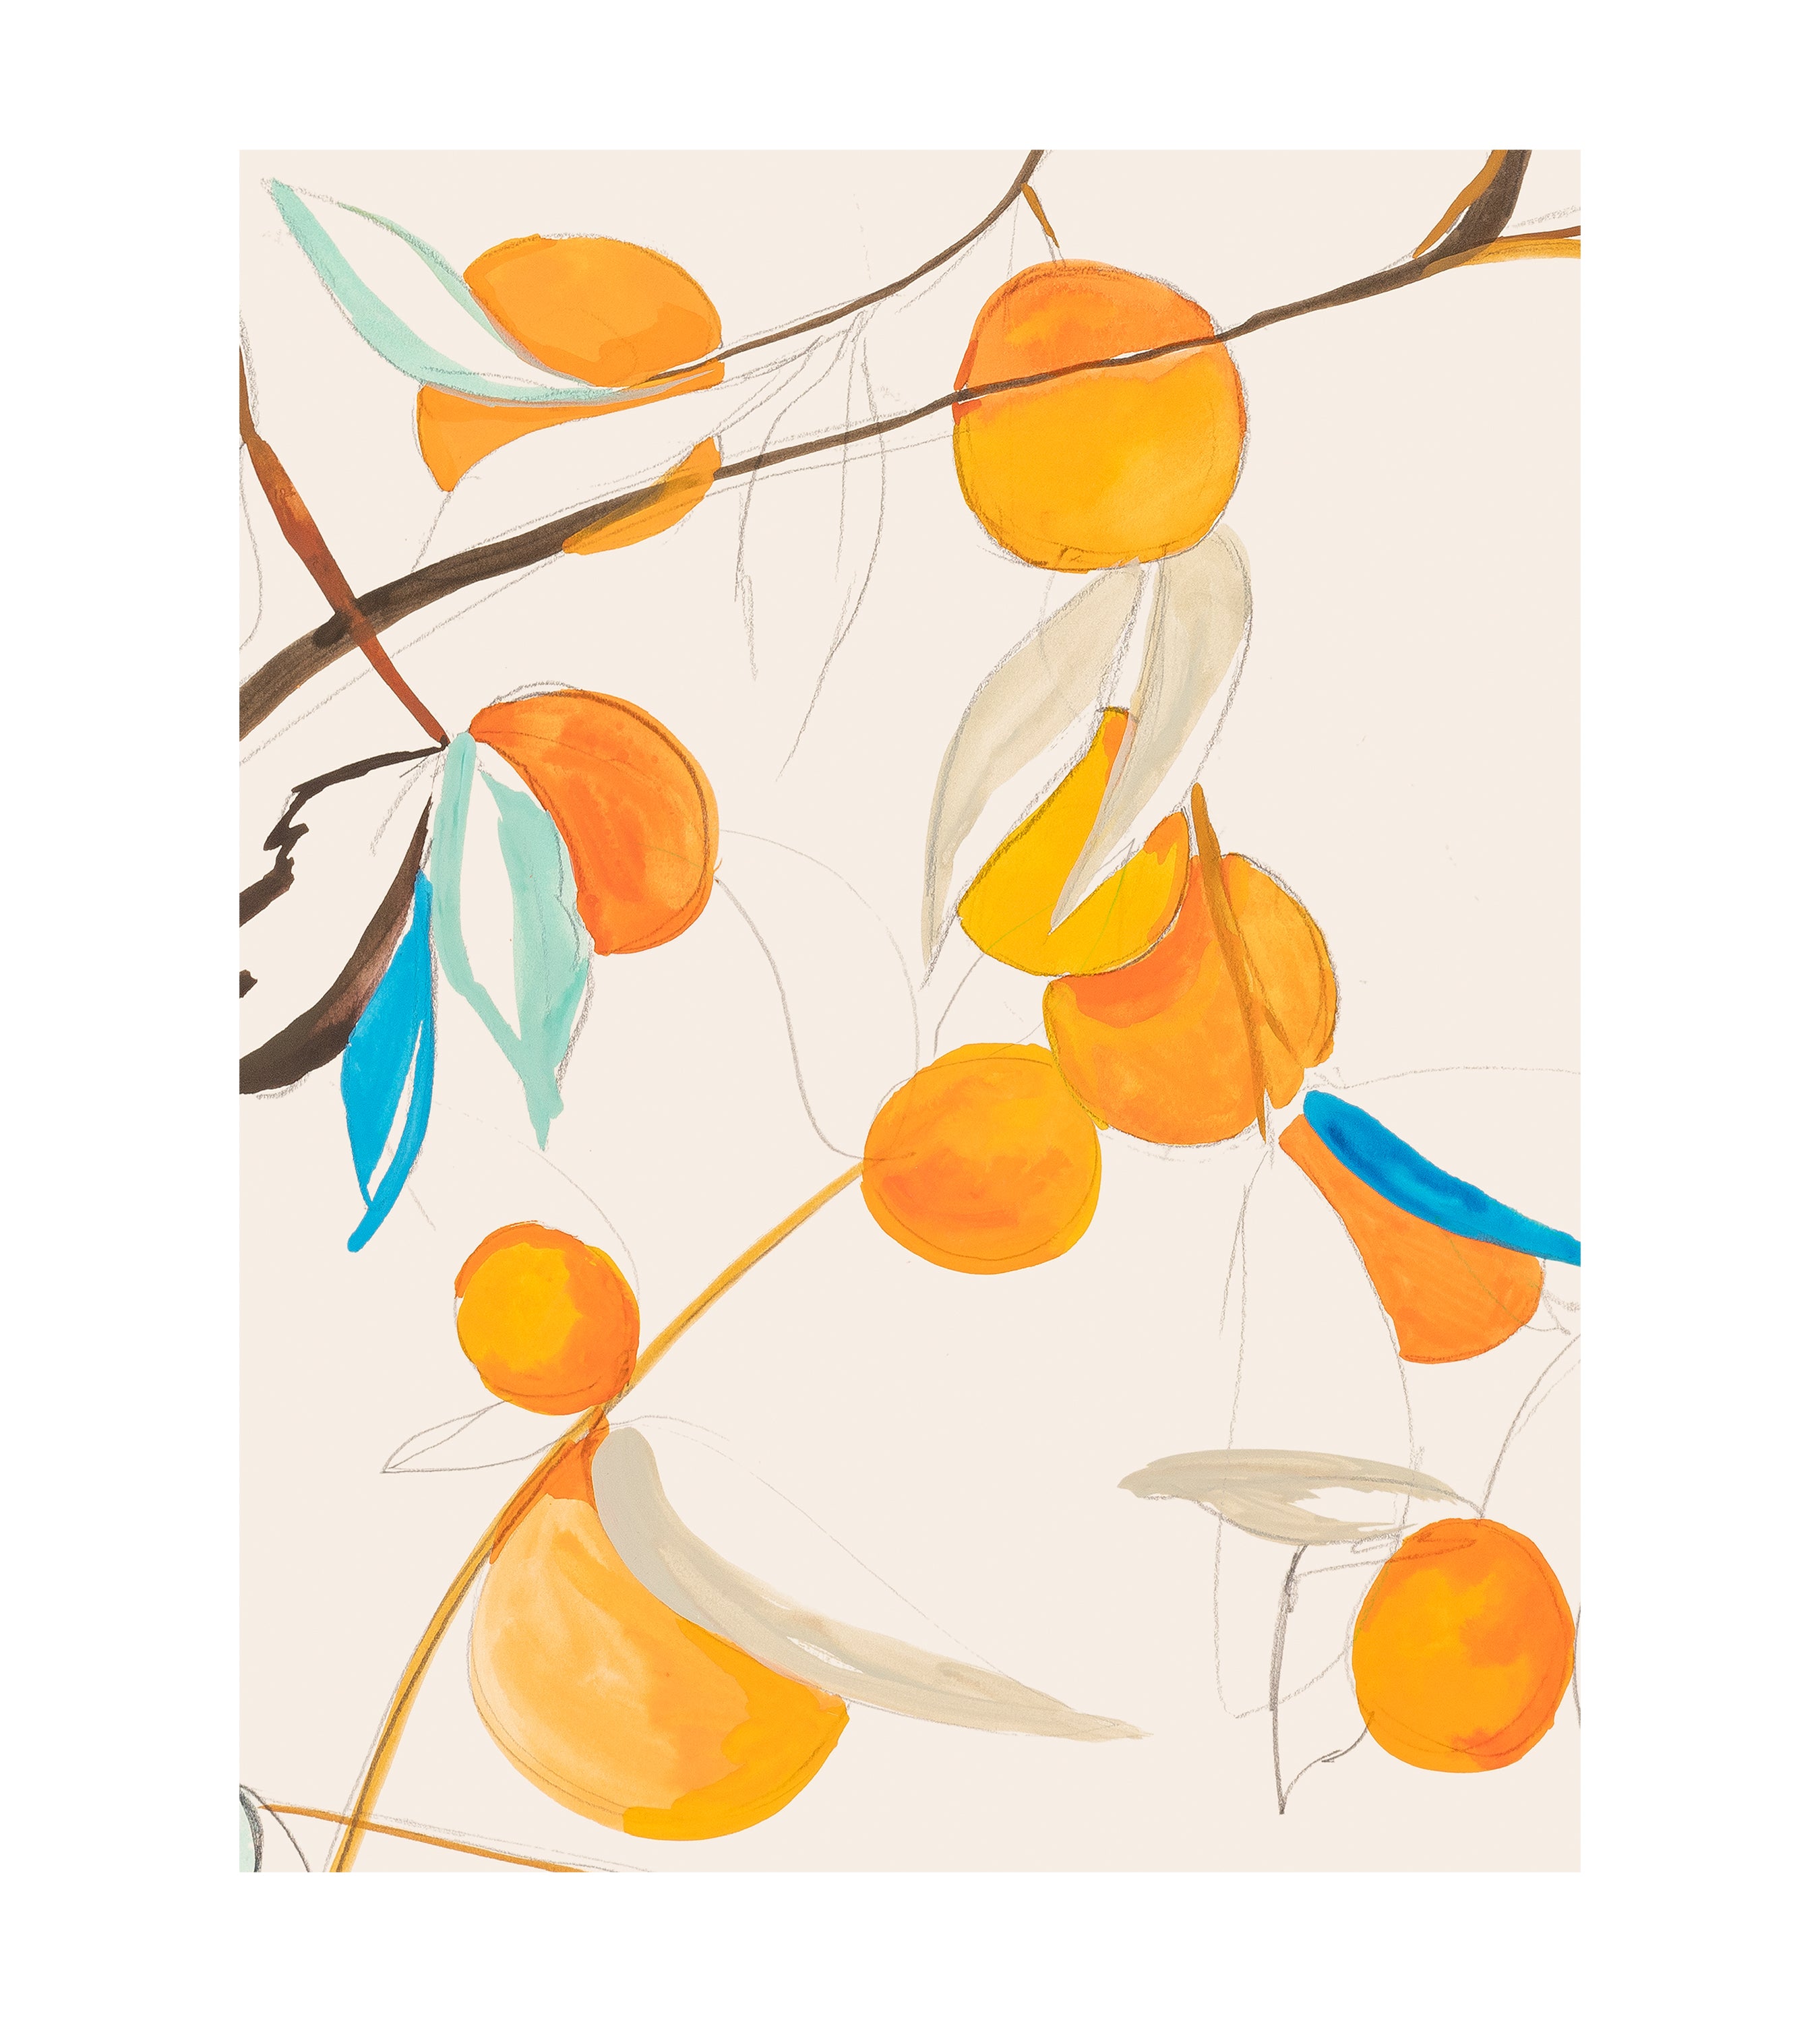 Orangerie Chinoiserie Wallpaper